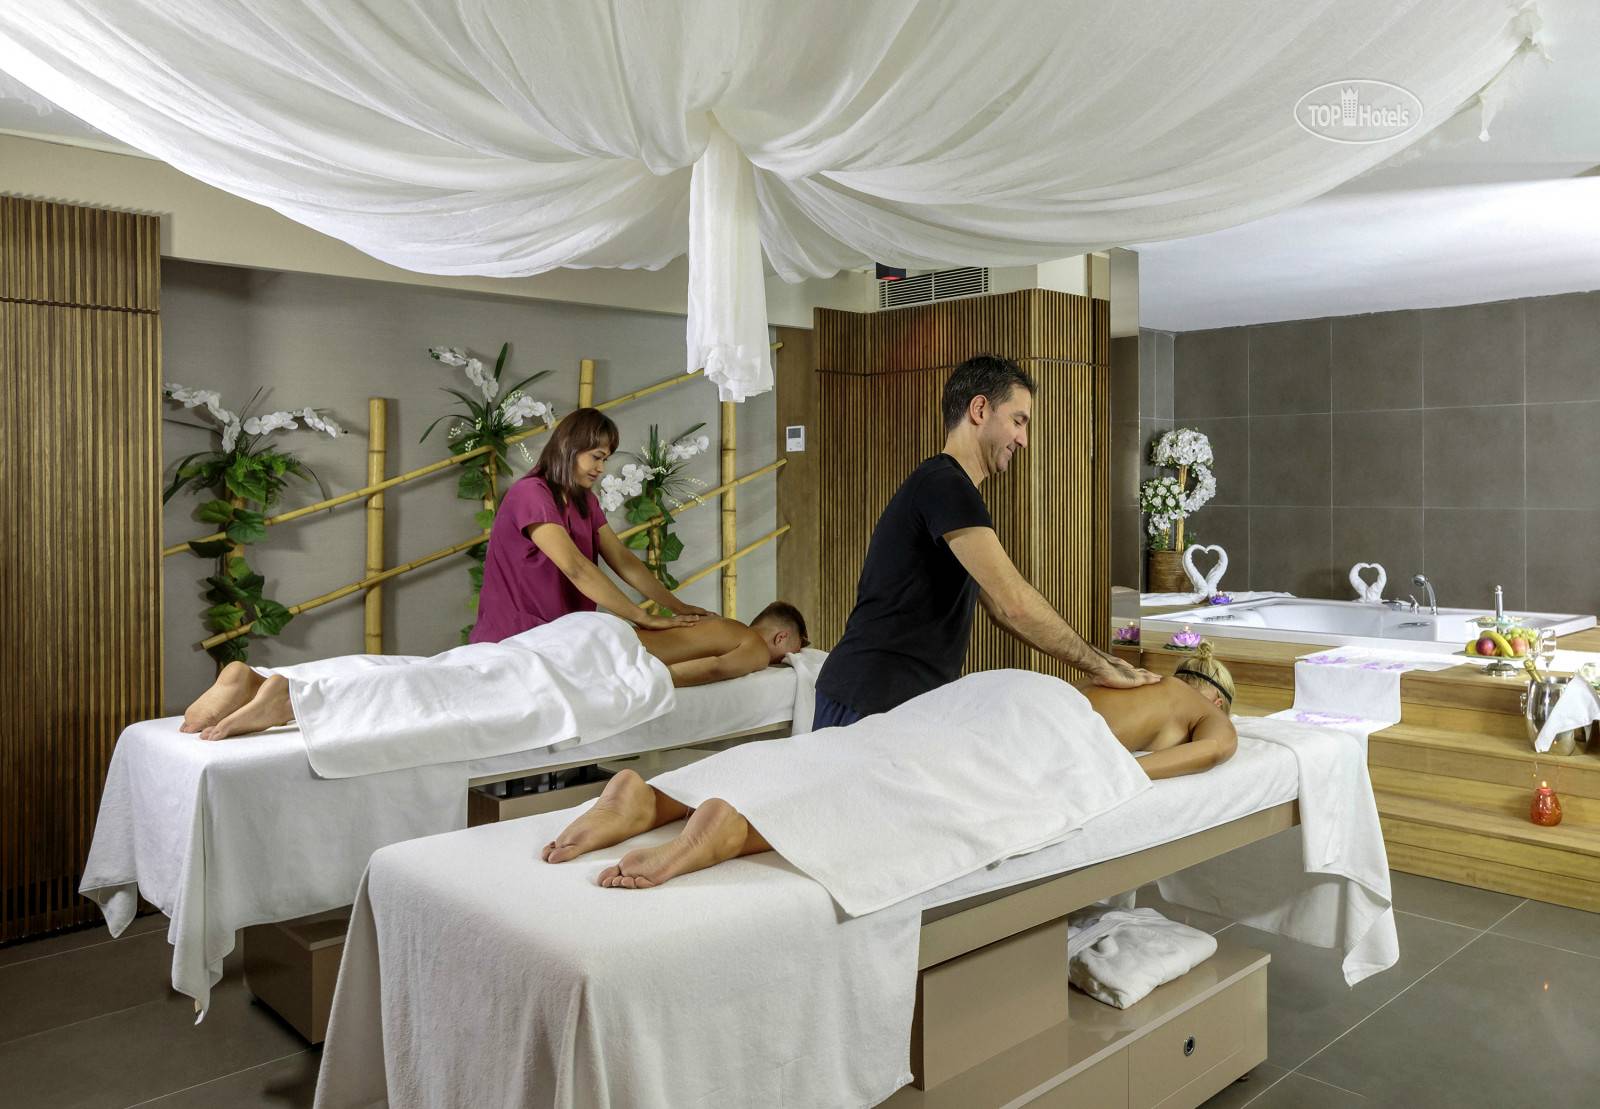 5 massage. Отель Riolavitas Resort Spa 5. Резорт спа отель. Спа в отеле. Спа услуги в гостинице.